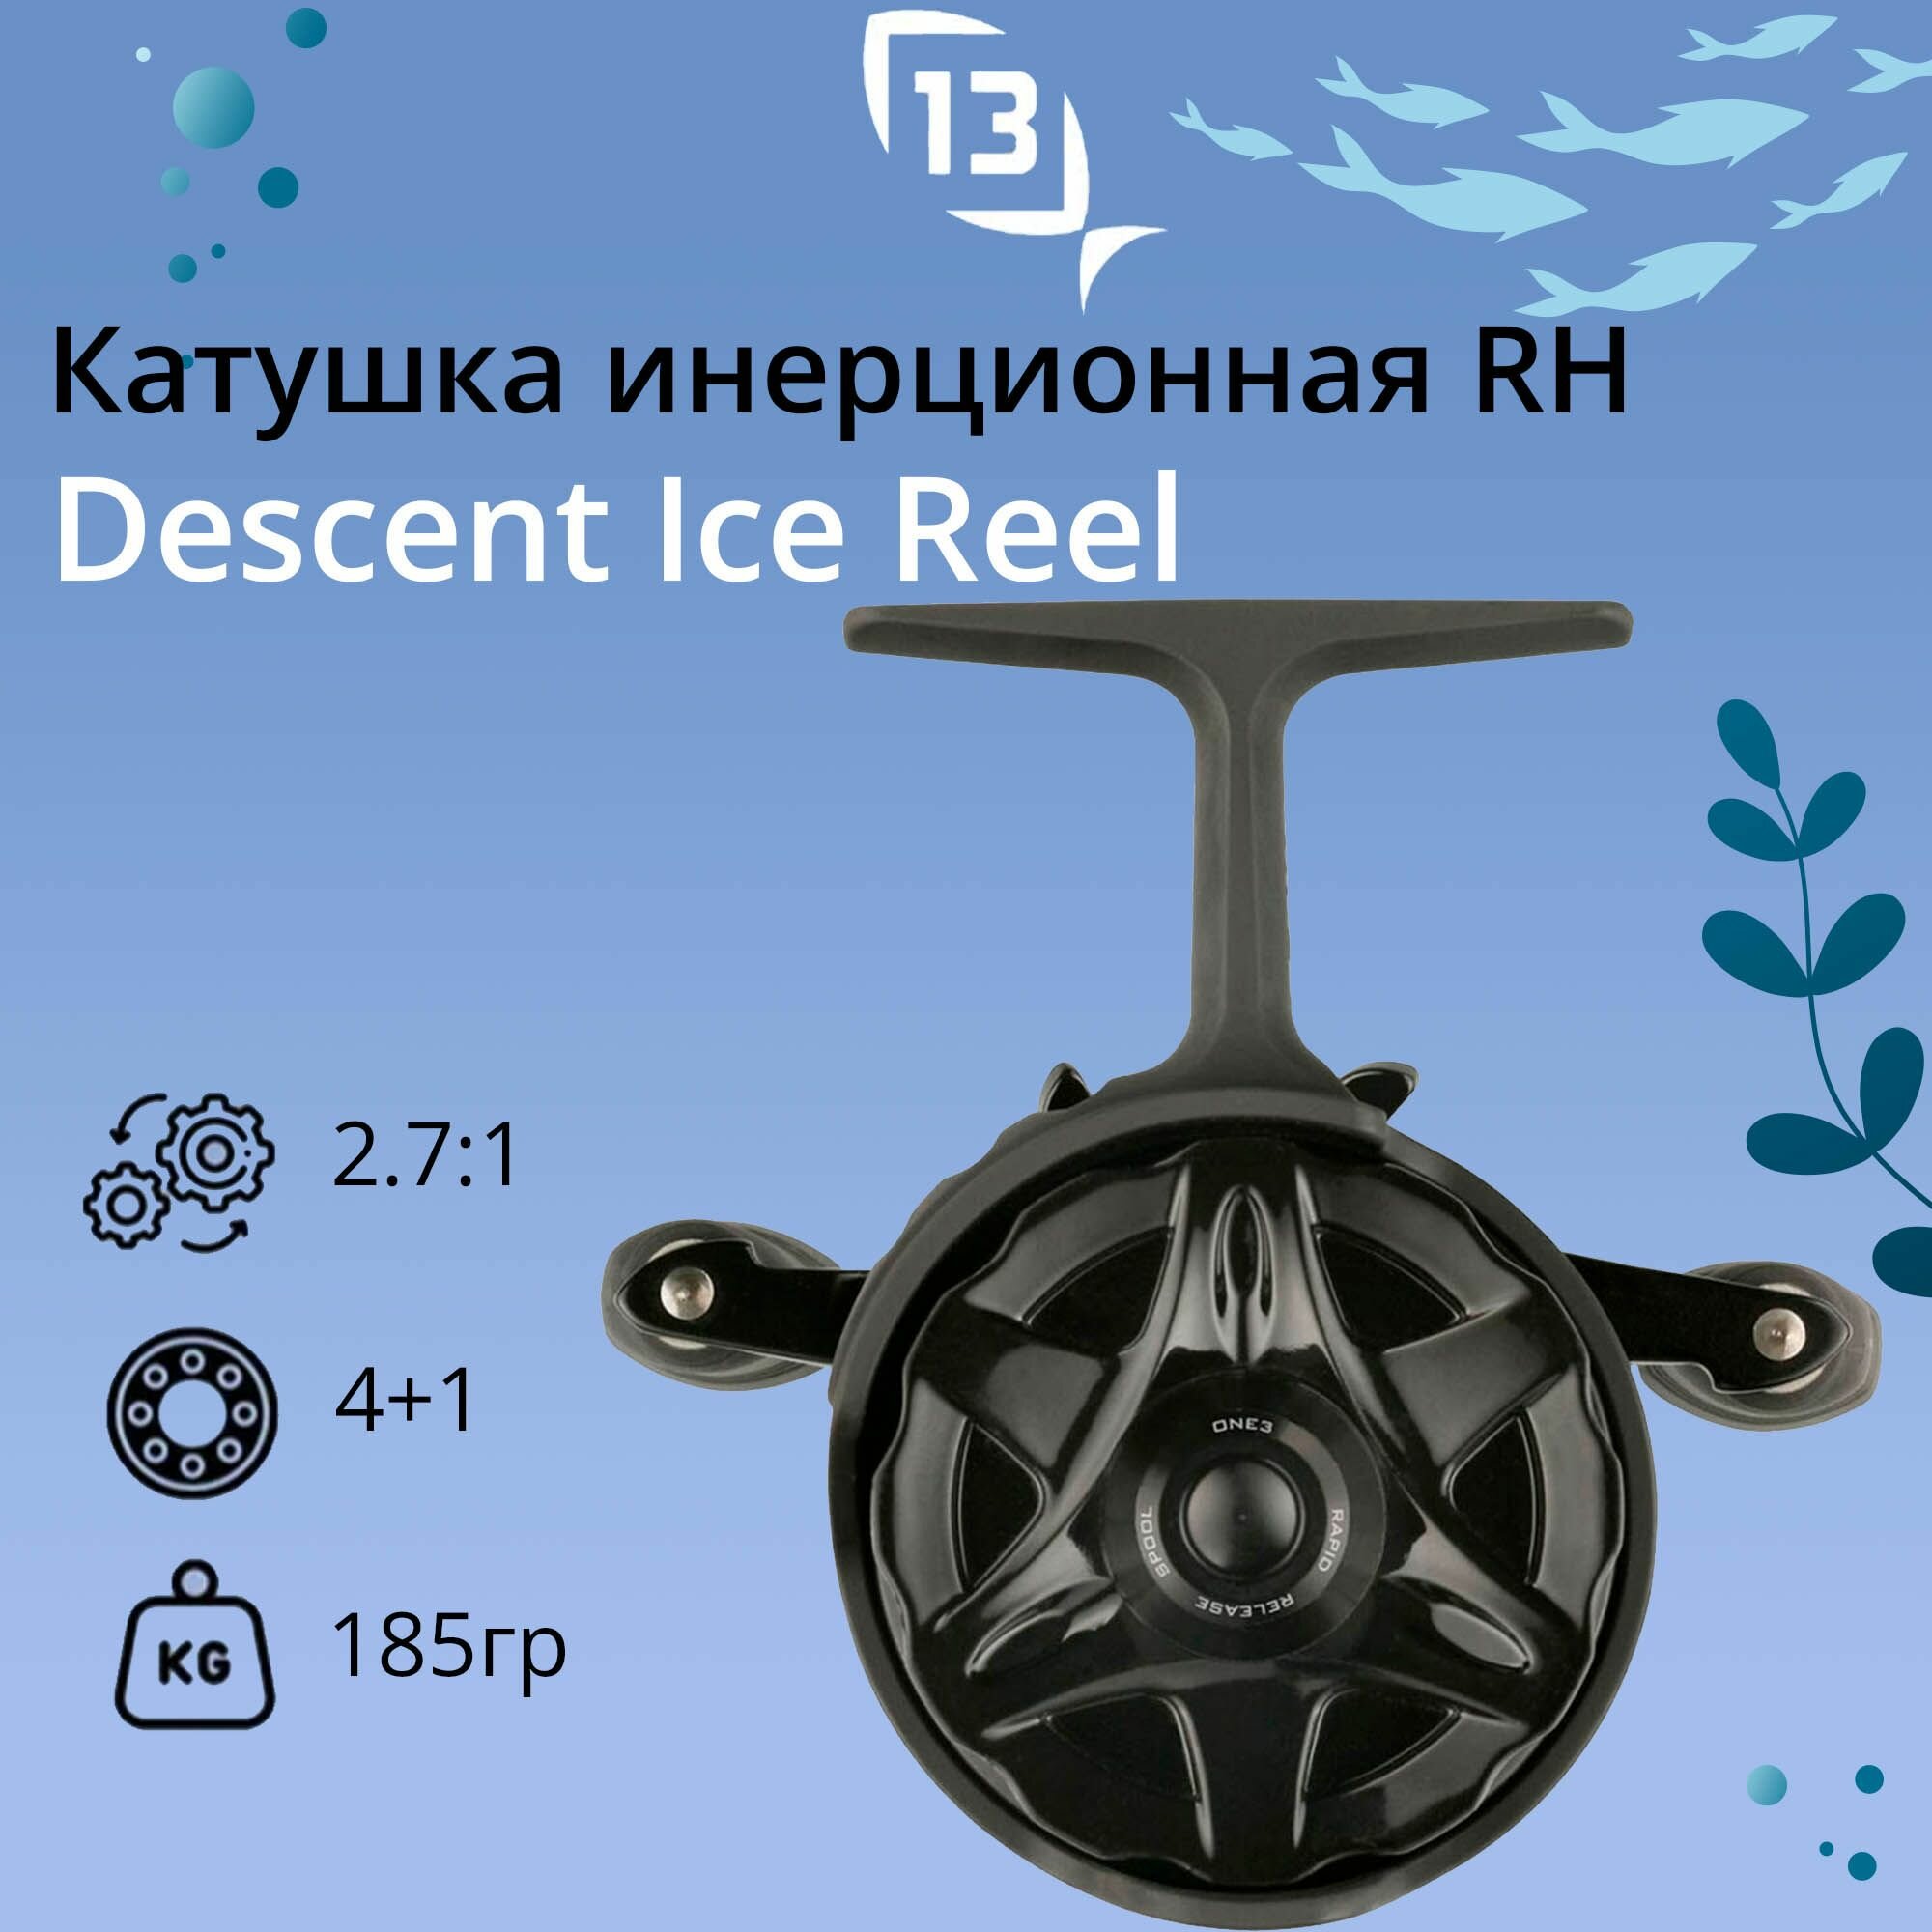 Катушка для рыбалки 13 Fishing Descent Ice Reel - 2.7:1 Gear Ratio под правую руку вес - 185гр